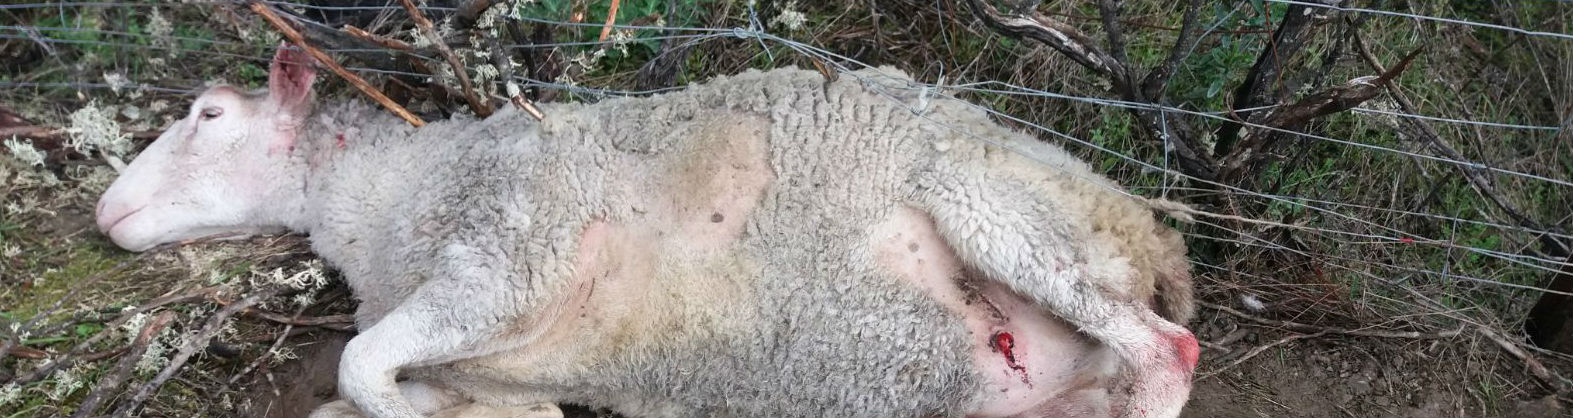 Cadáver de una oveja atacada por perros en una explotación ganadera de Jaén